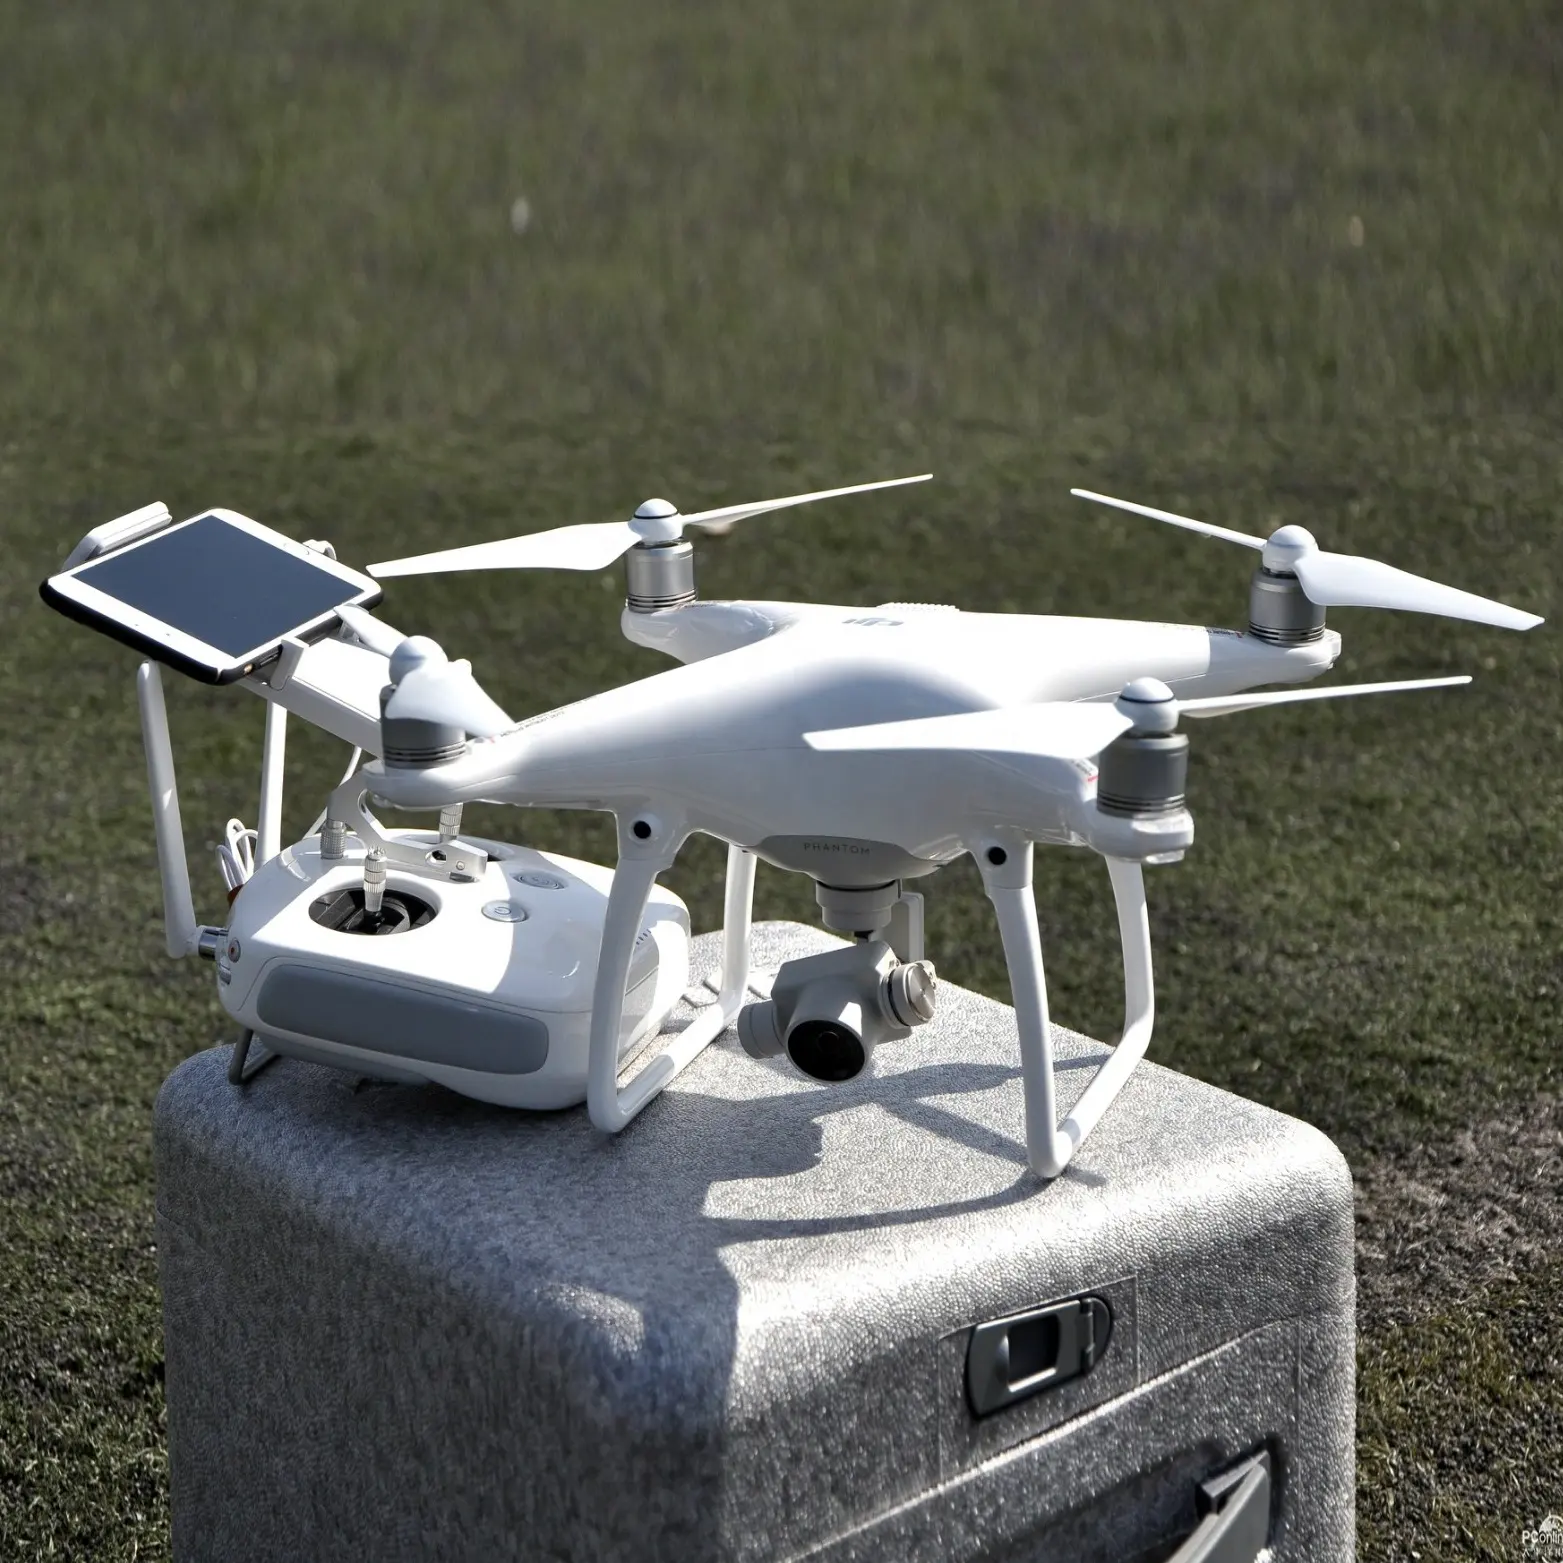 Wholesale 100% Original and New for DJI Phantom 4 Quadcopter 4K Video Camera Drone